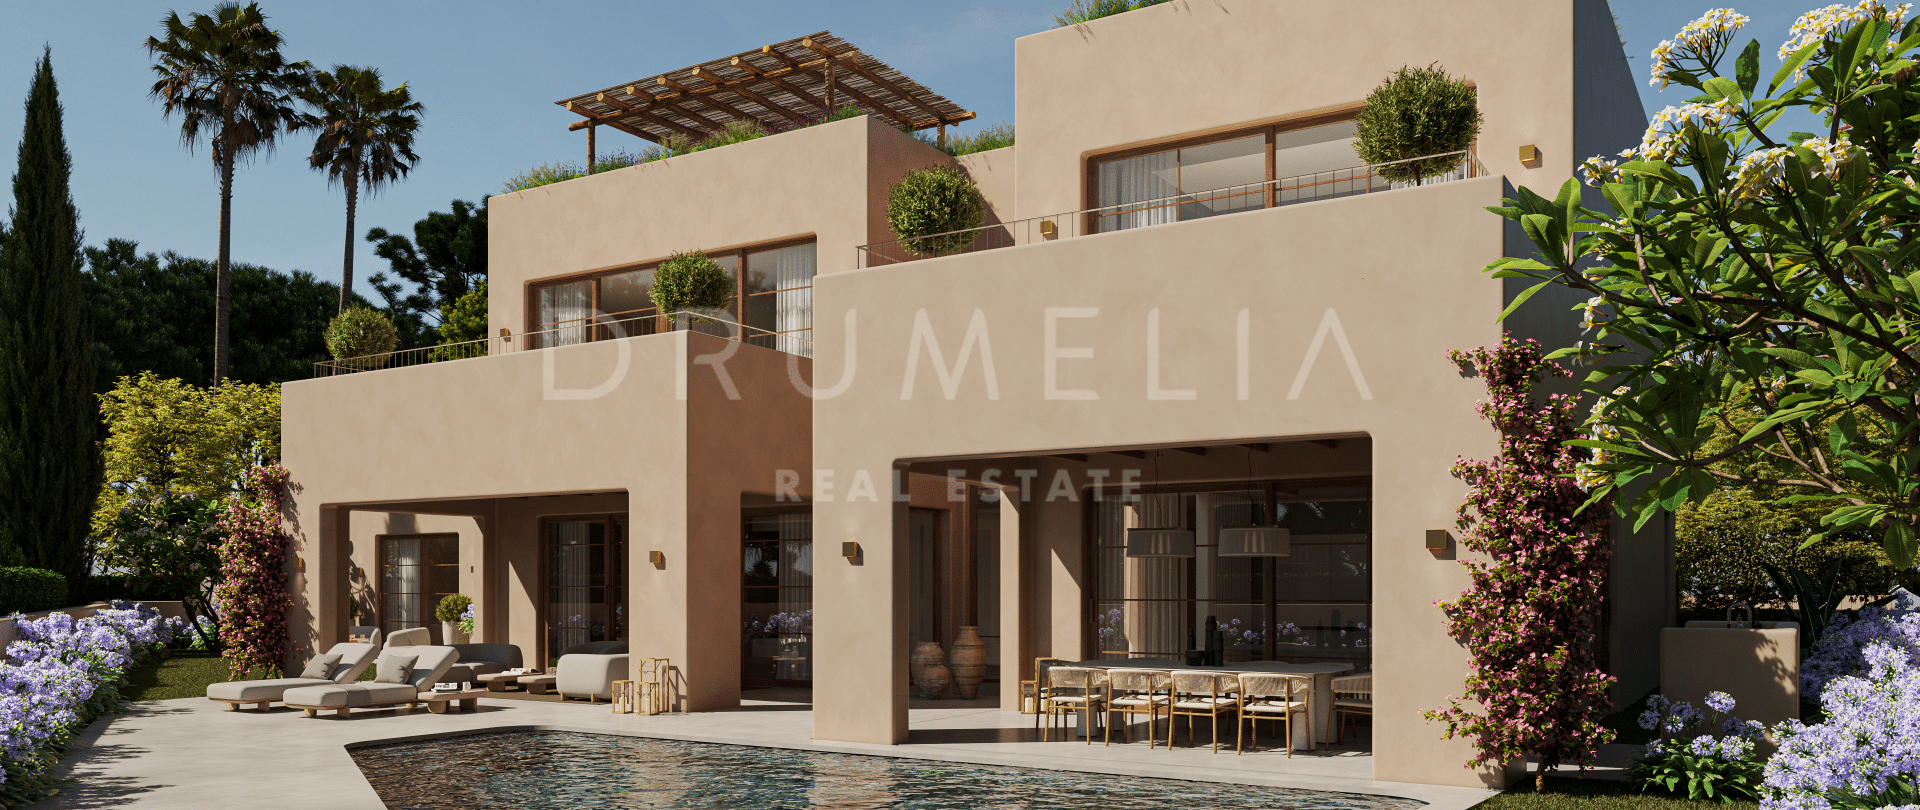 Terrain exceptionnel et projet de villa sur mesure d'une architecture unique à Casa Blanca, Marbella